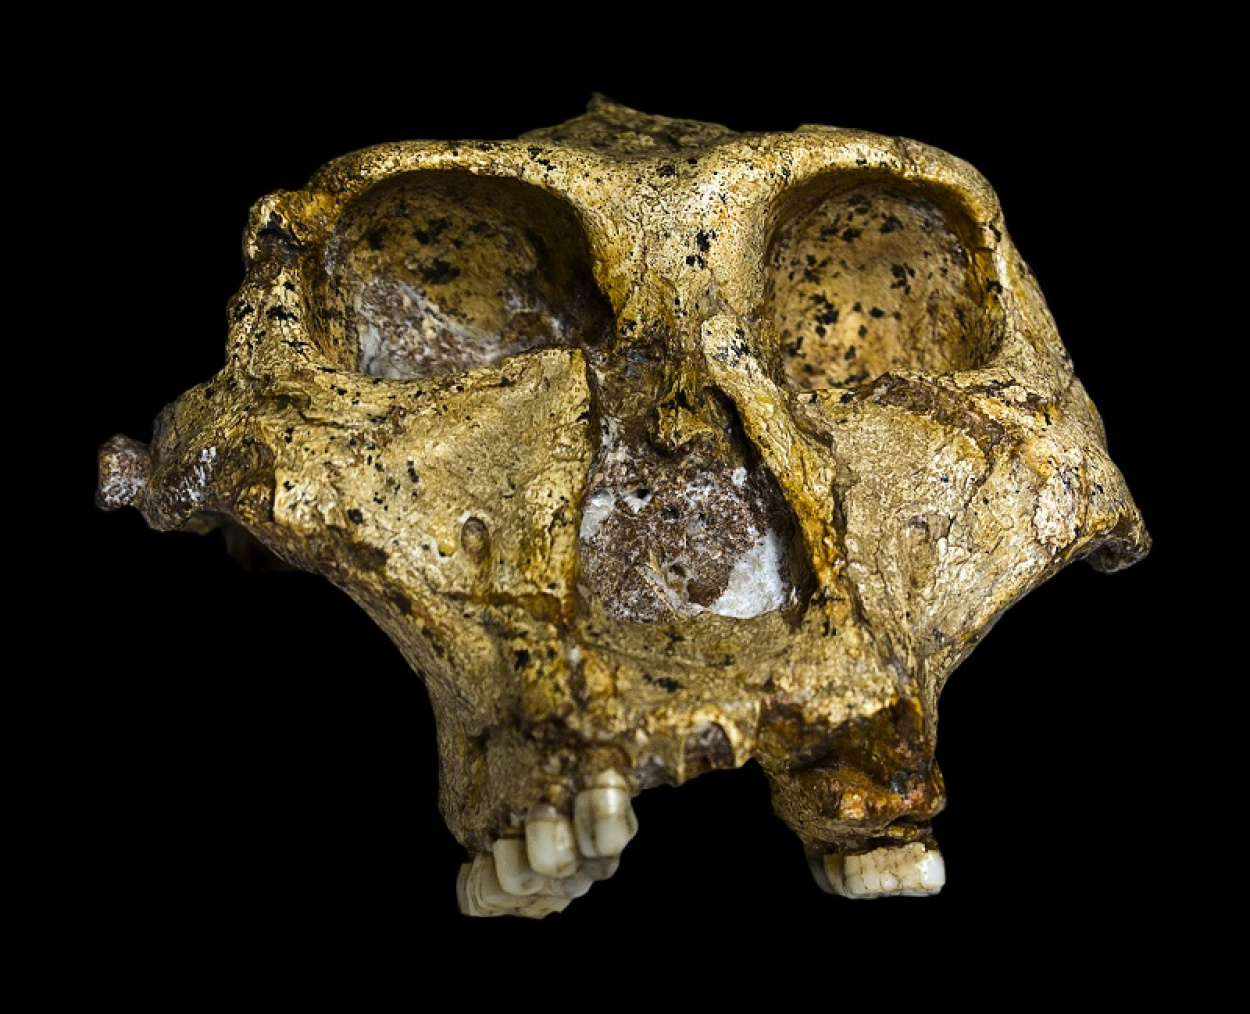 Szenzációs régészeti leletet találtak Dél-Afrikában